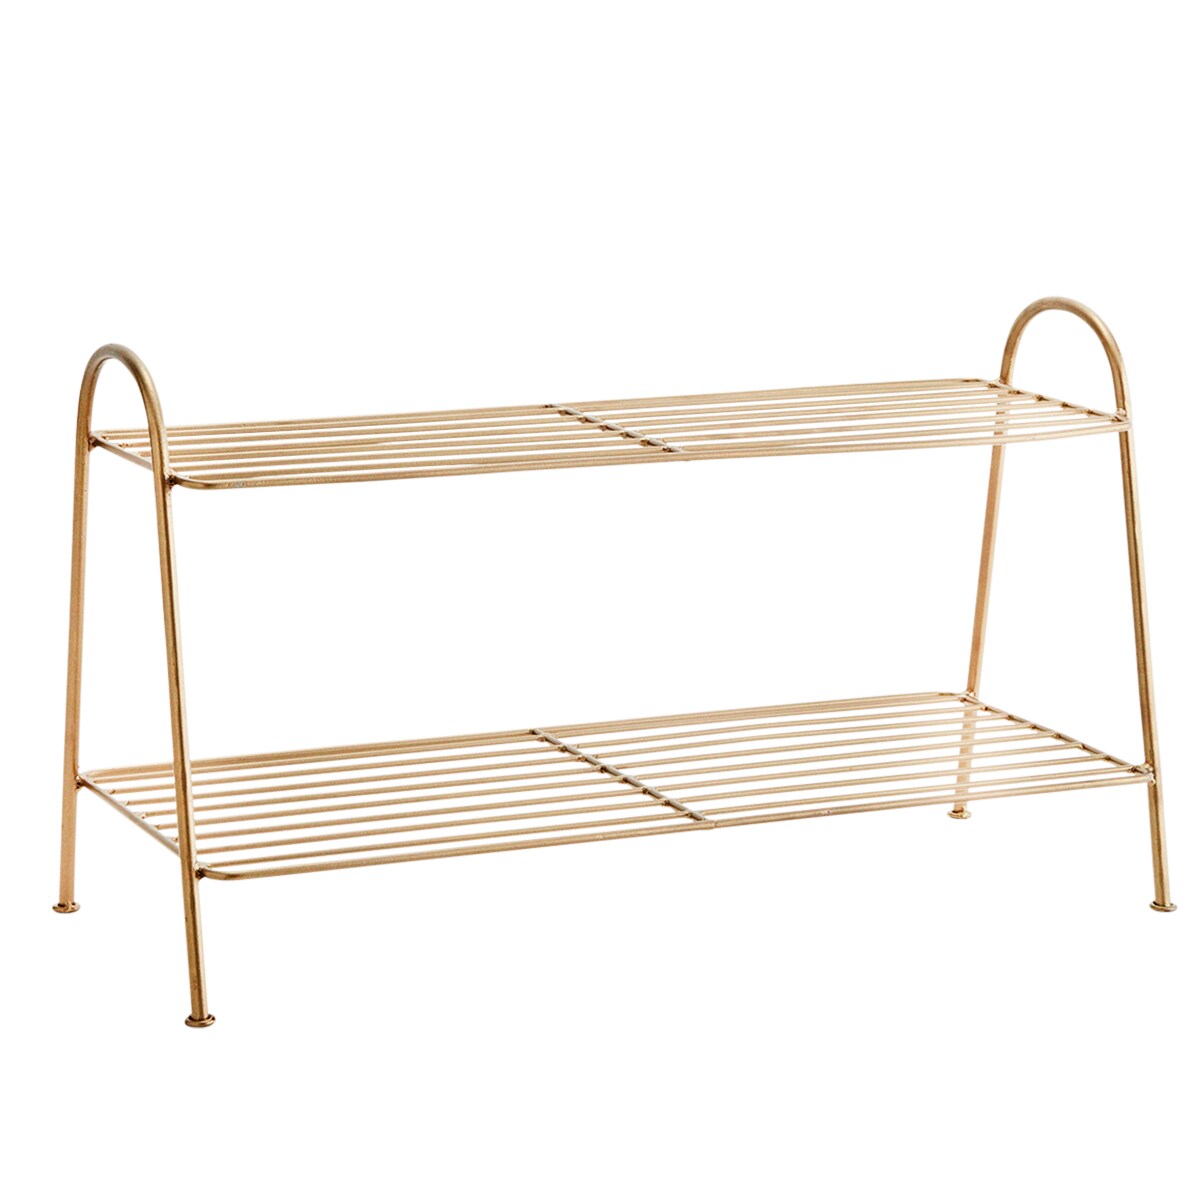 https://royaldesign.com/image/2/madam-stoltz-shoe-rack-brass-3-shelves-0